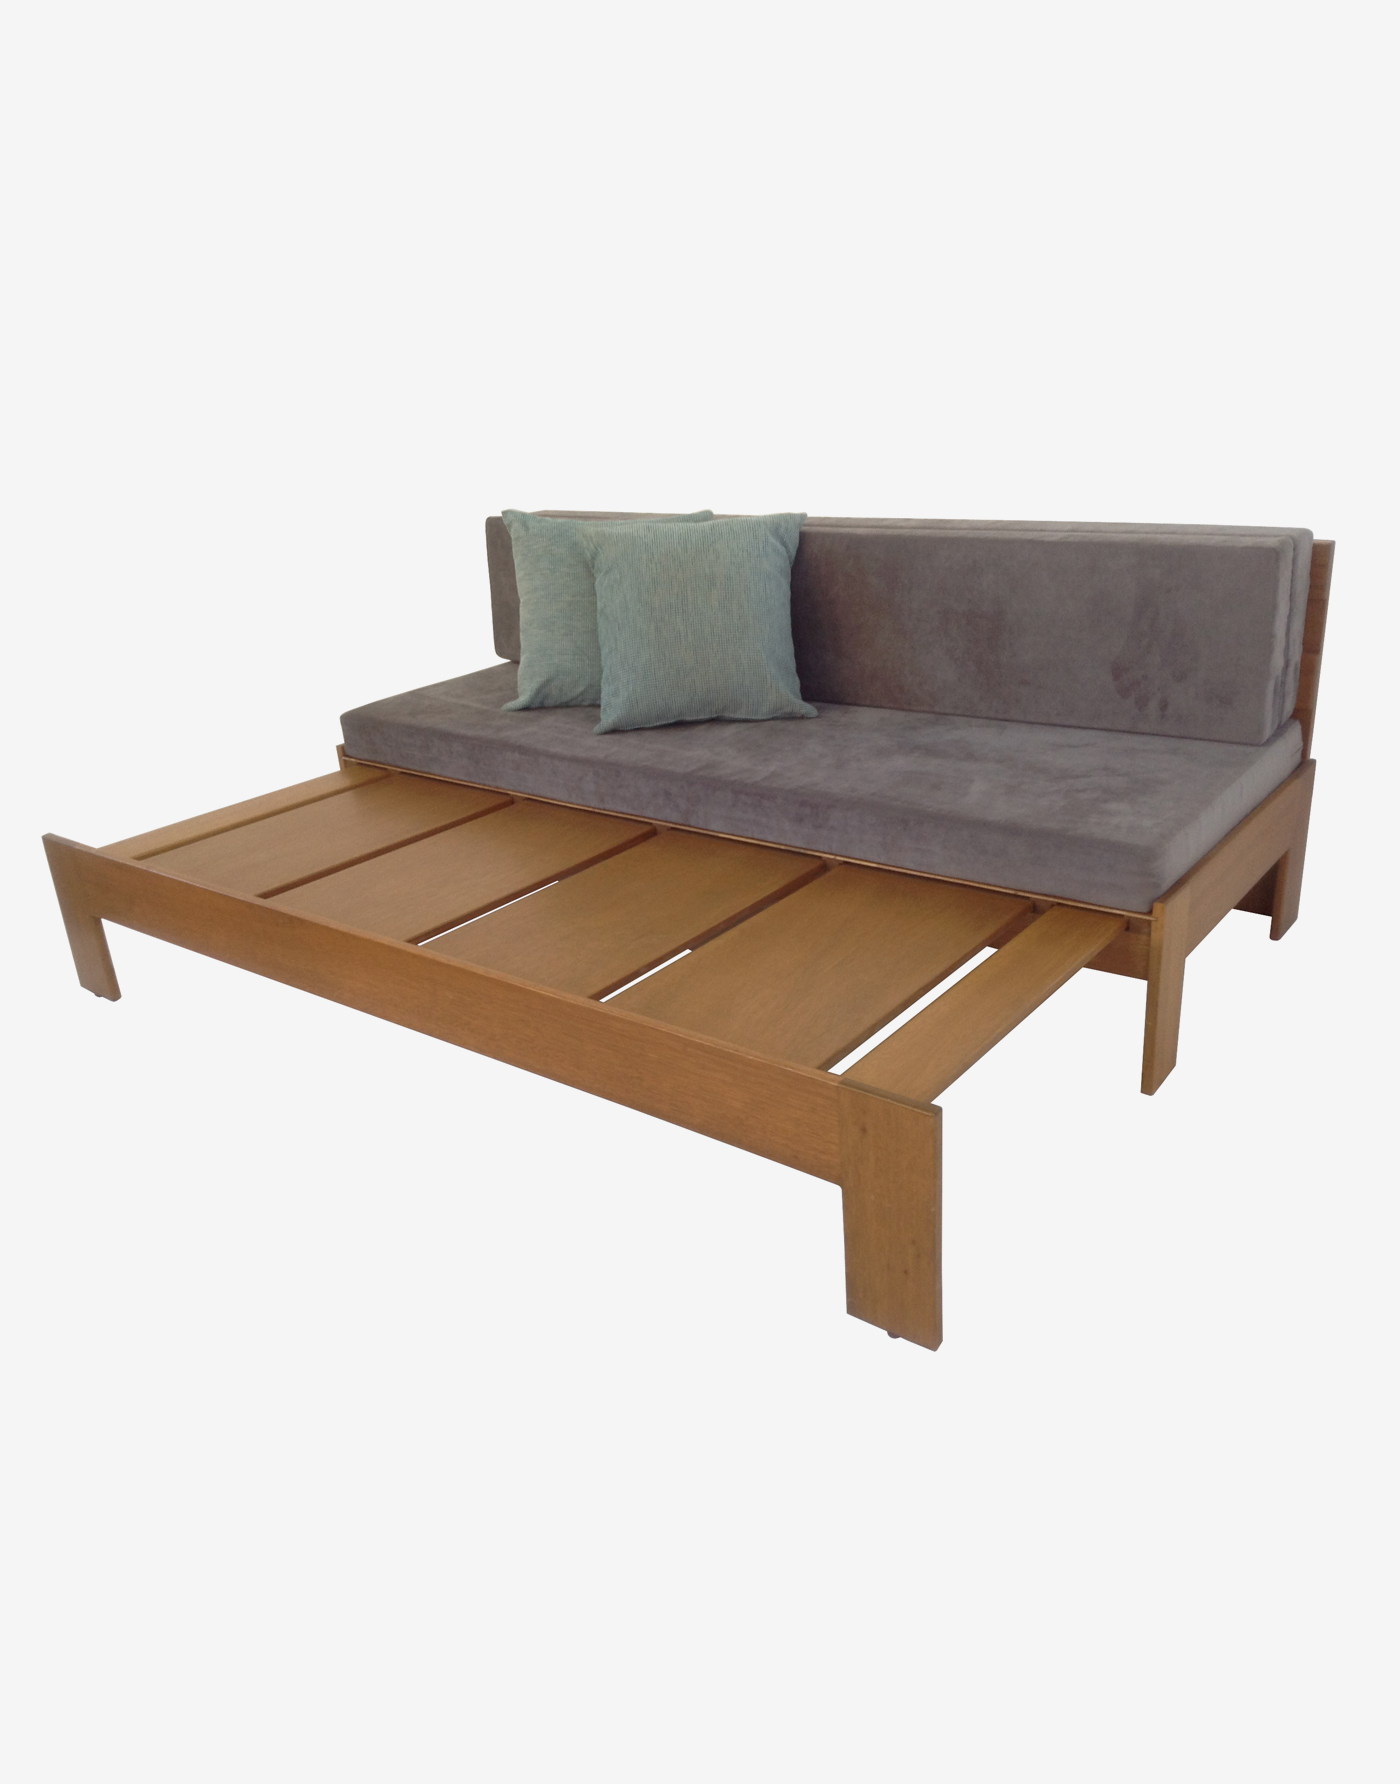 Sofa Bed - Focolare Carpentry - Furniture Manila, Philippines